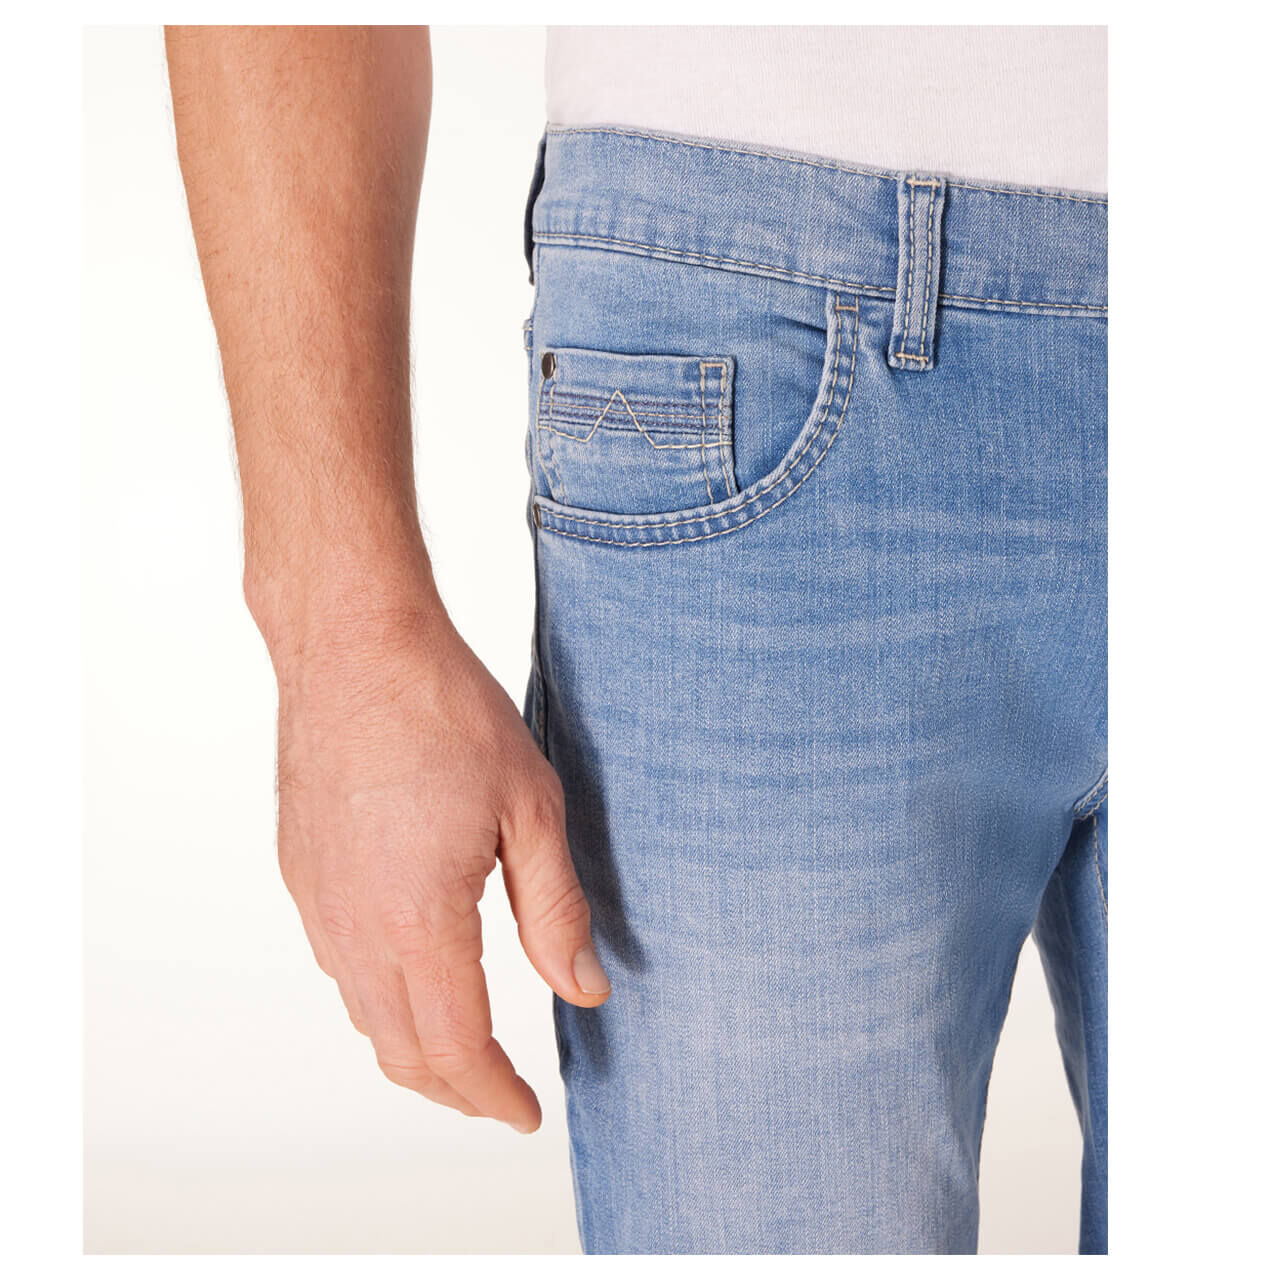 Pioneer Rando Jeans Megaflex soft blue used